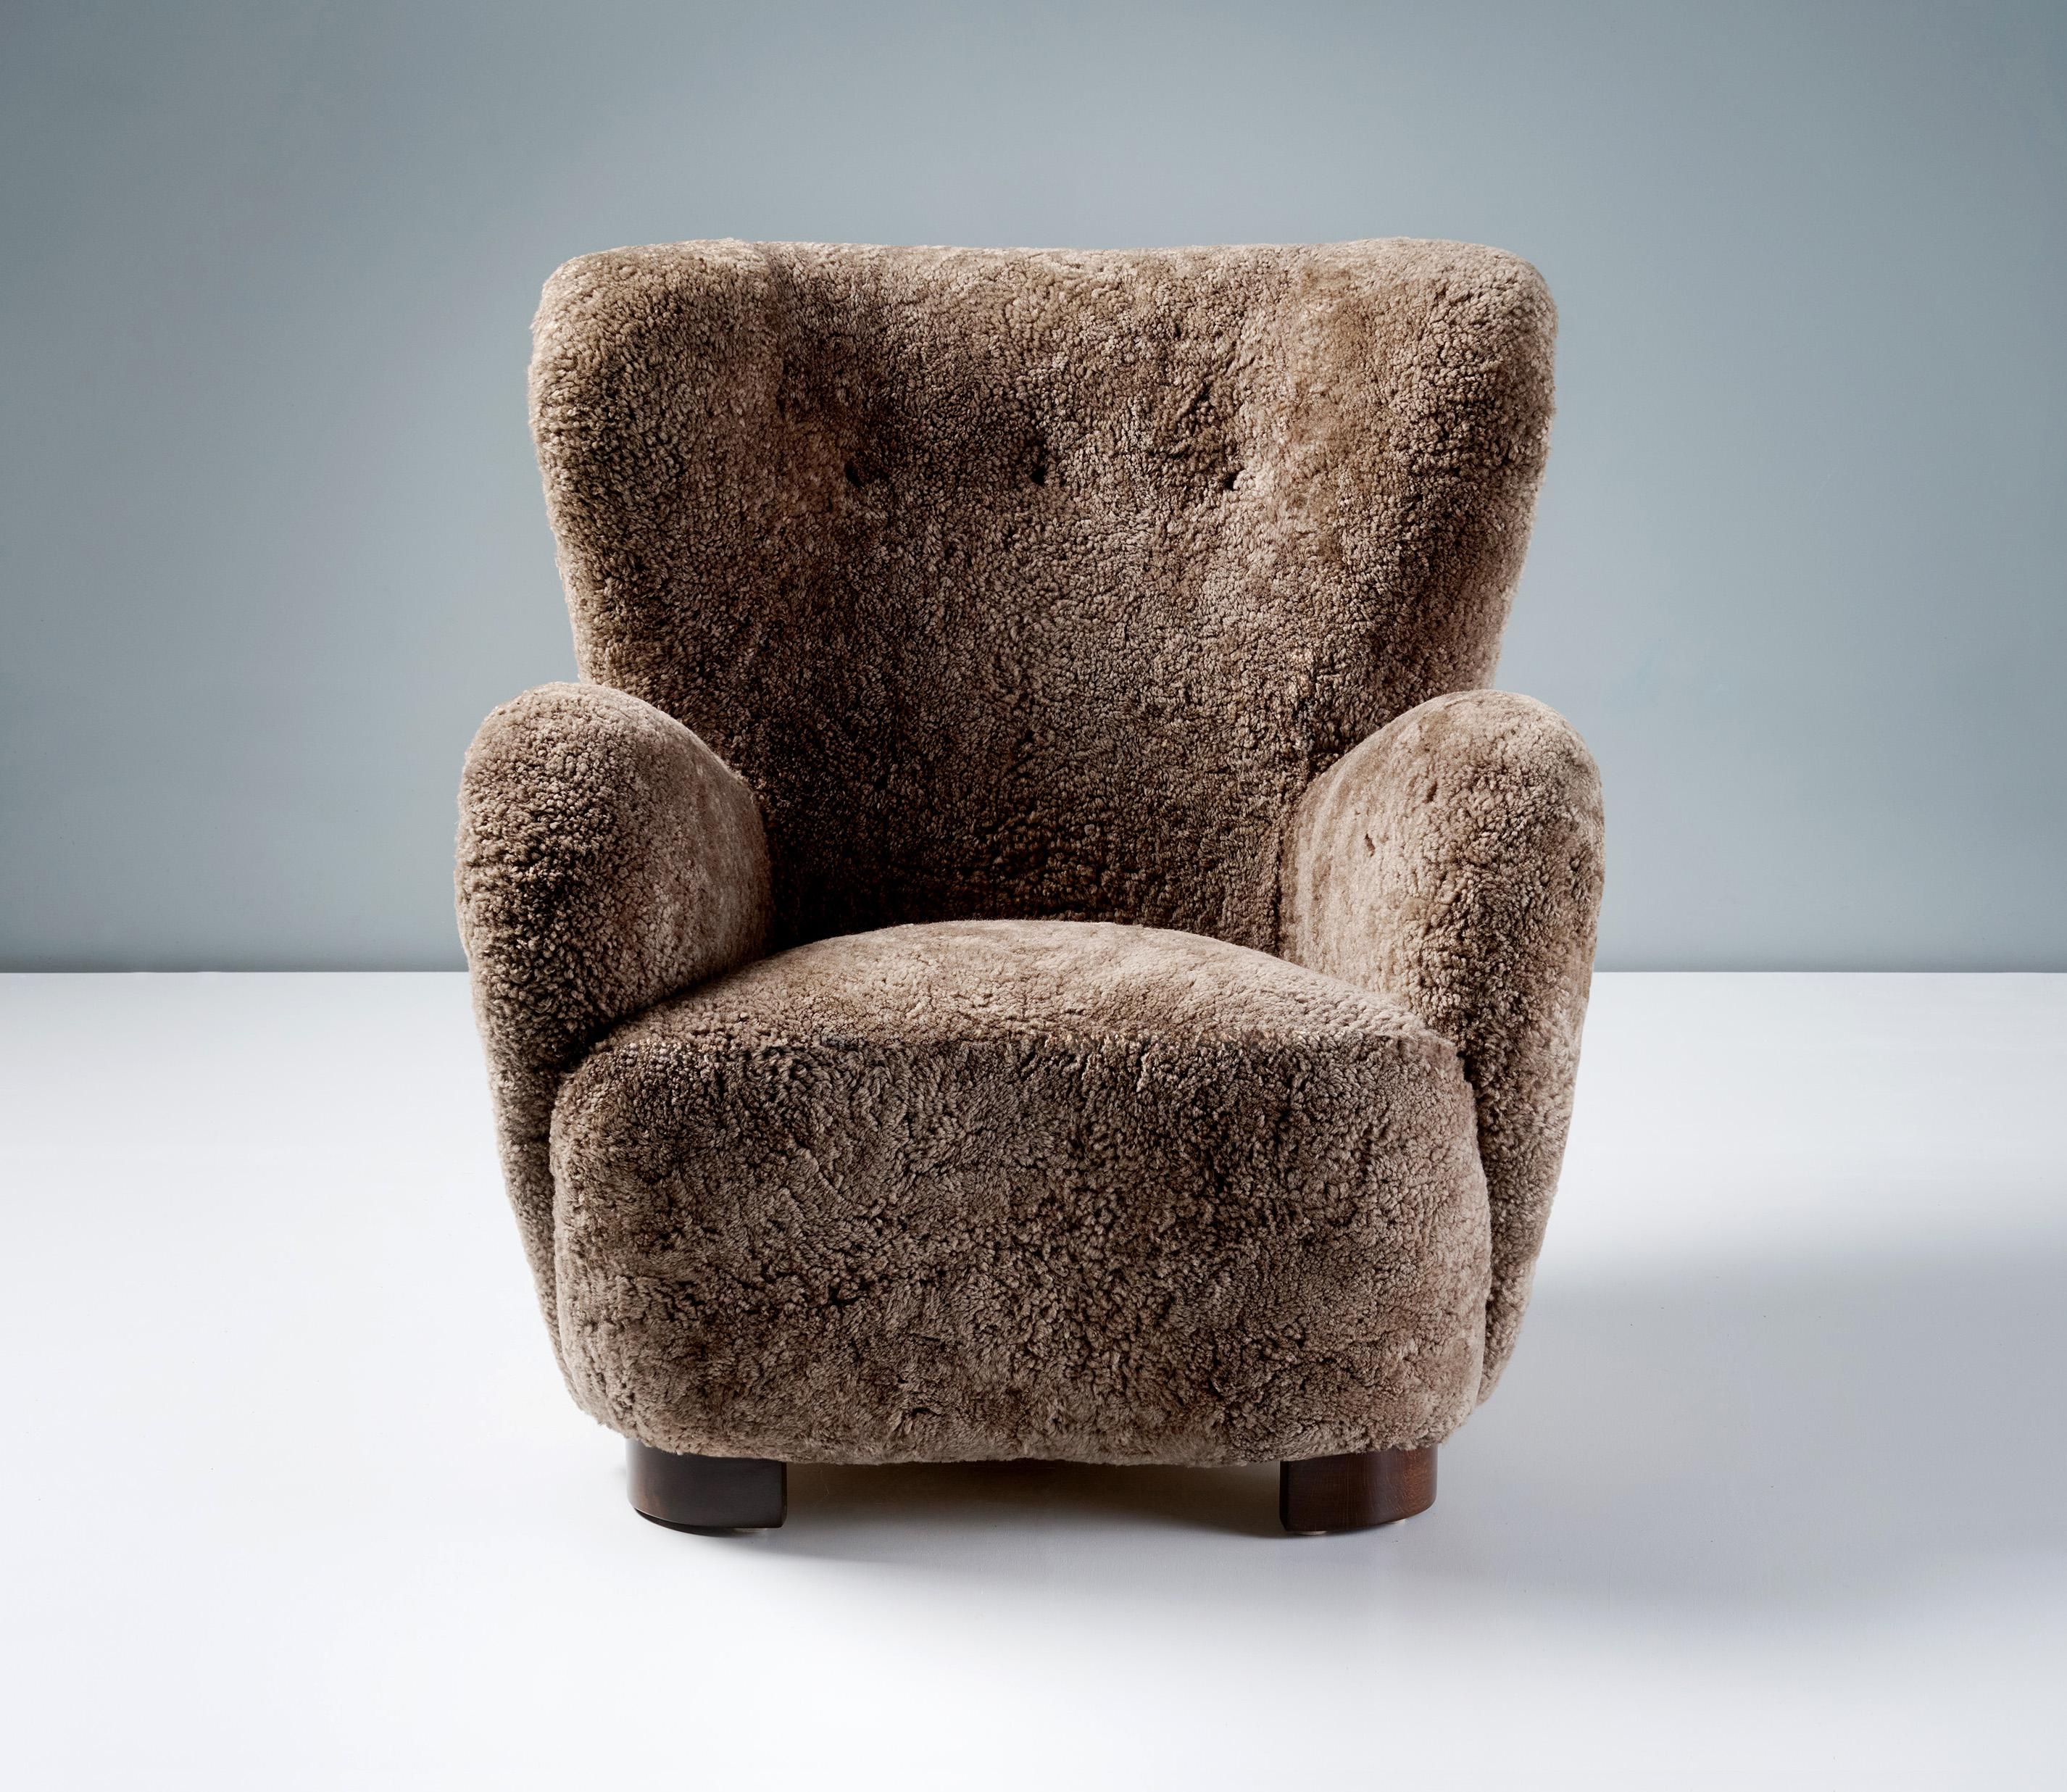 Fauteuil en peau de mouton d'ébéniste danois, vers les années 1940.

Cette grande chaise longue produite par un ébéniste danois dans les années 1940 est typique des chaises longues danoises de l'époque. Il se caractérise par de grands bras incurvés